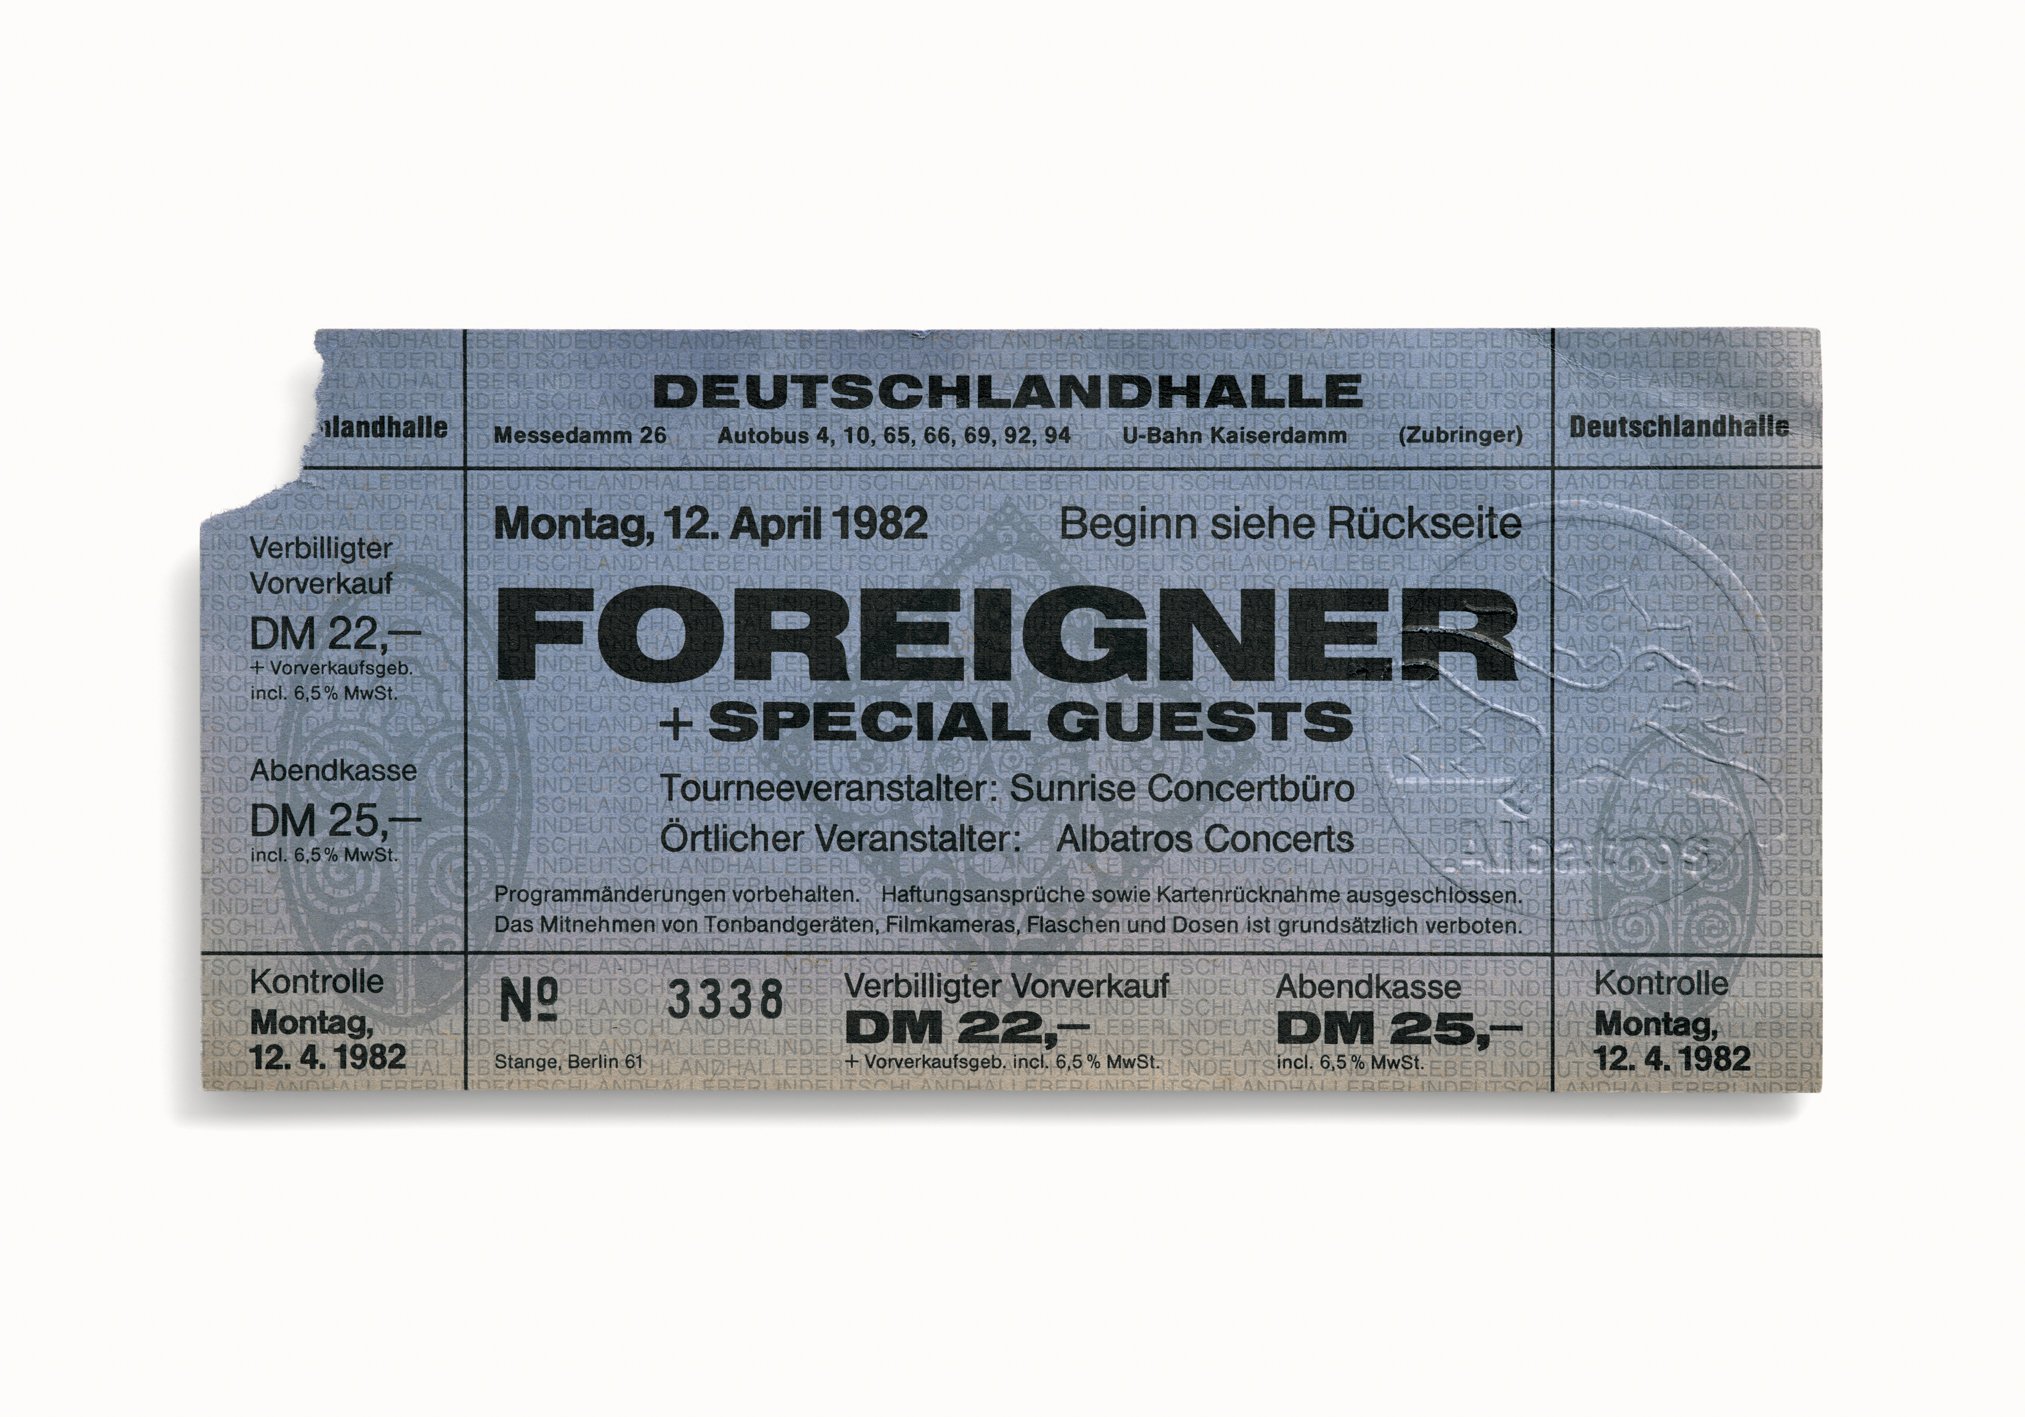 Foreigner, Deutschlandhalle, Berlin, Germany 1982